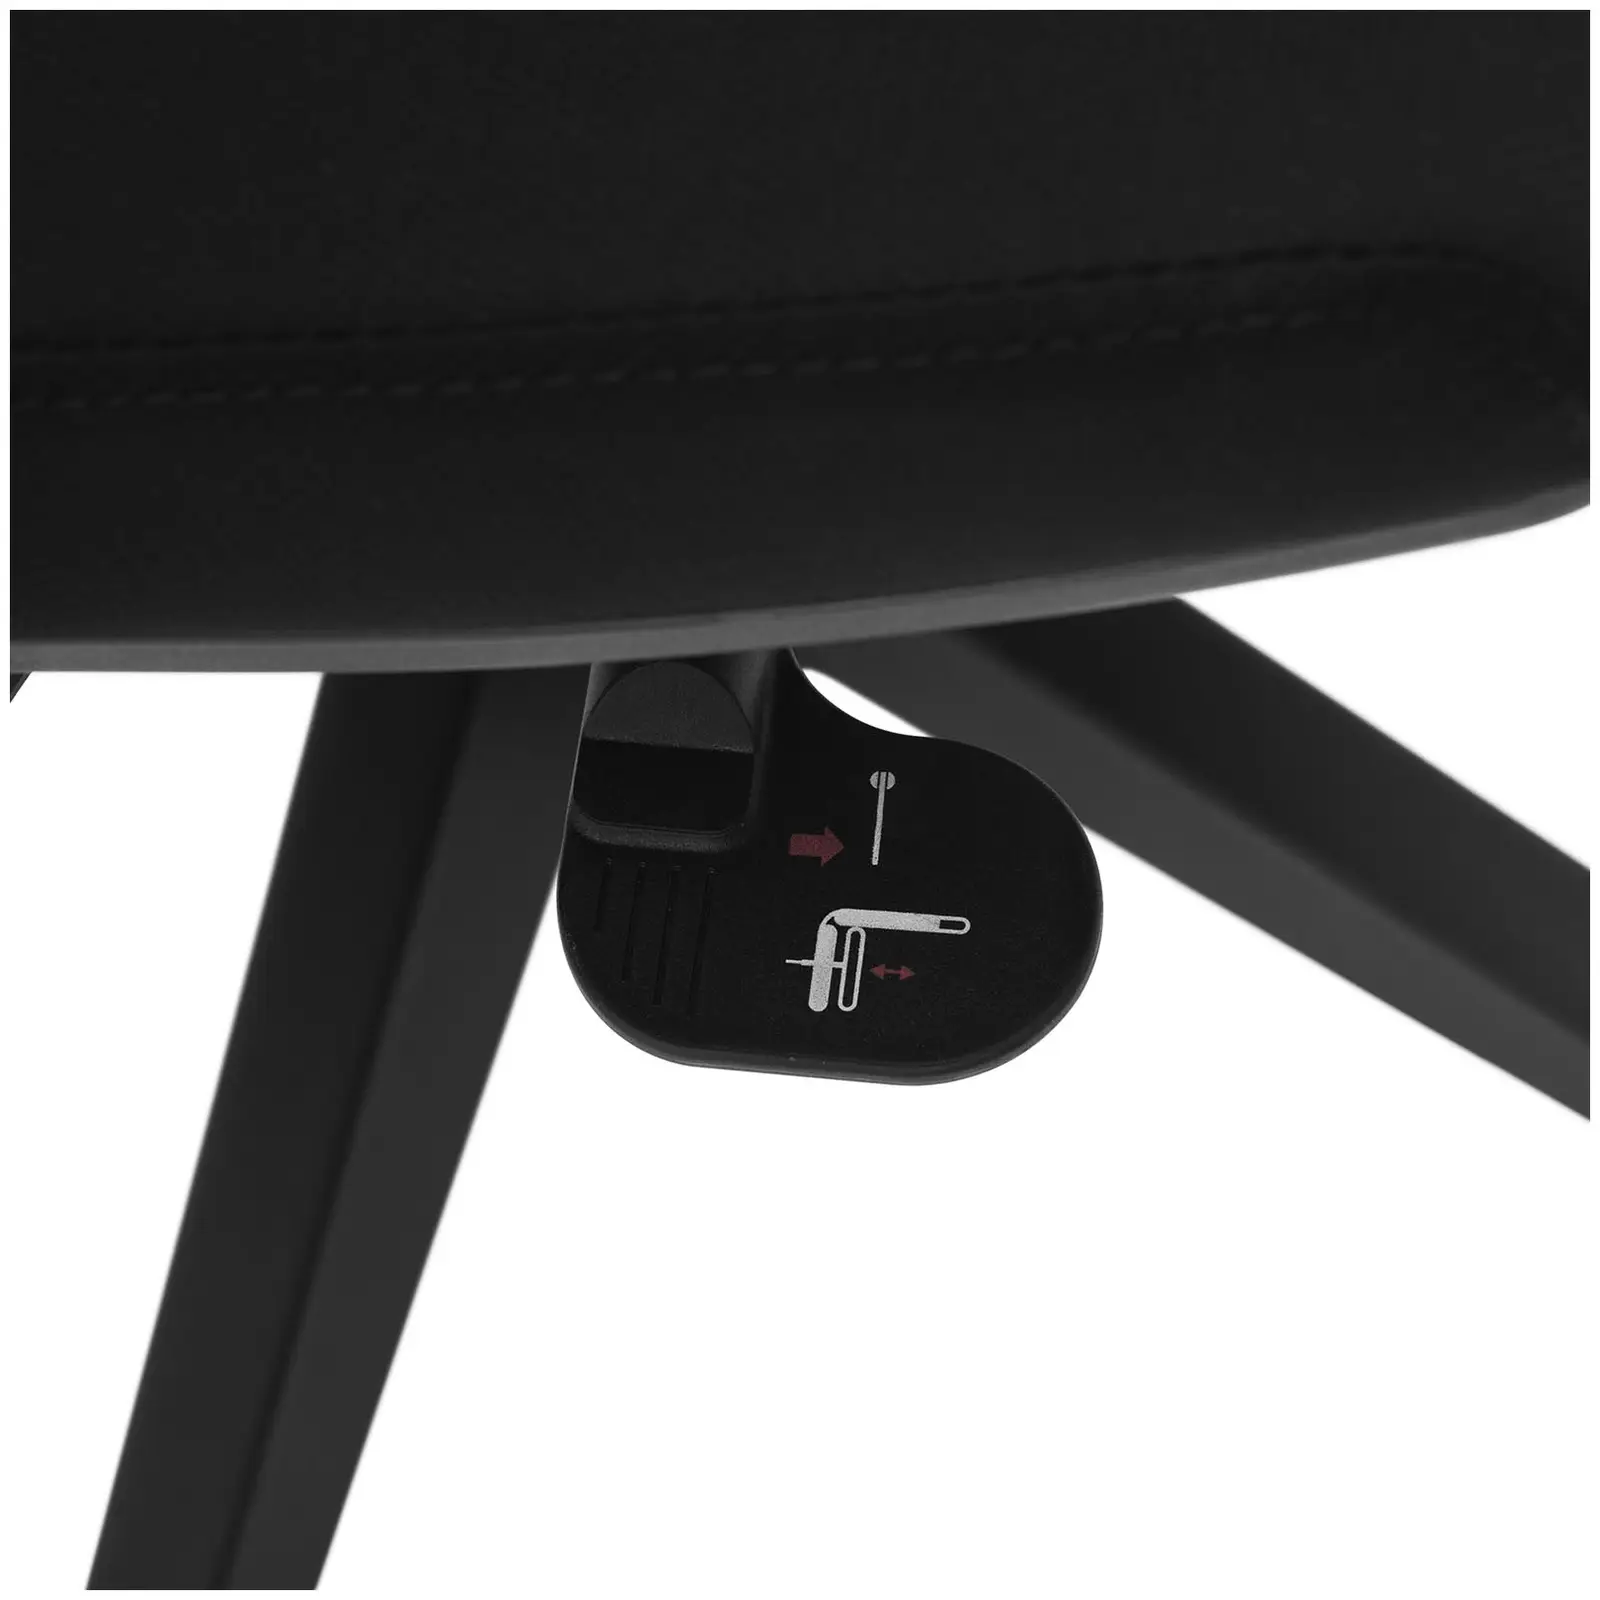 Chaise de bureau - Dossier en filet - 100 kg - Coloris noir